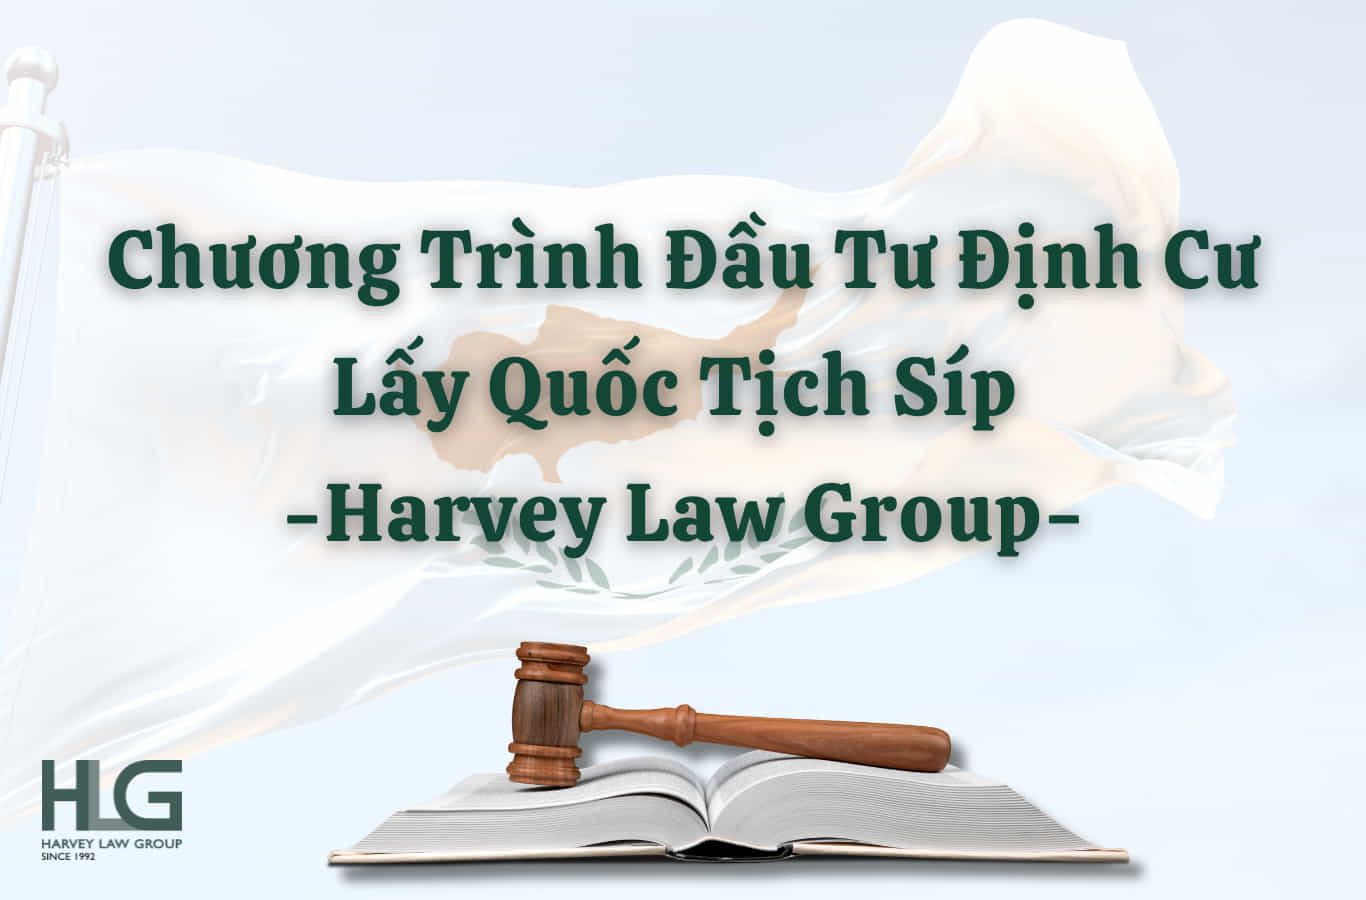 Chương trình đầu tư định cư lấy quốc tịch Síp tại Harvey Law Group